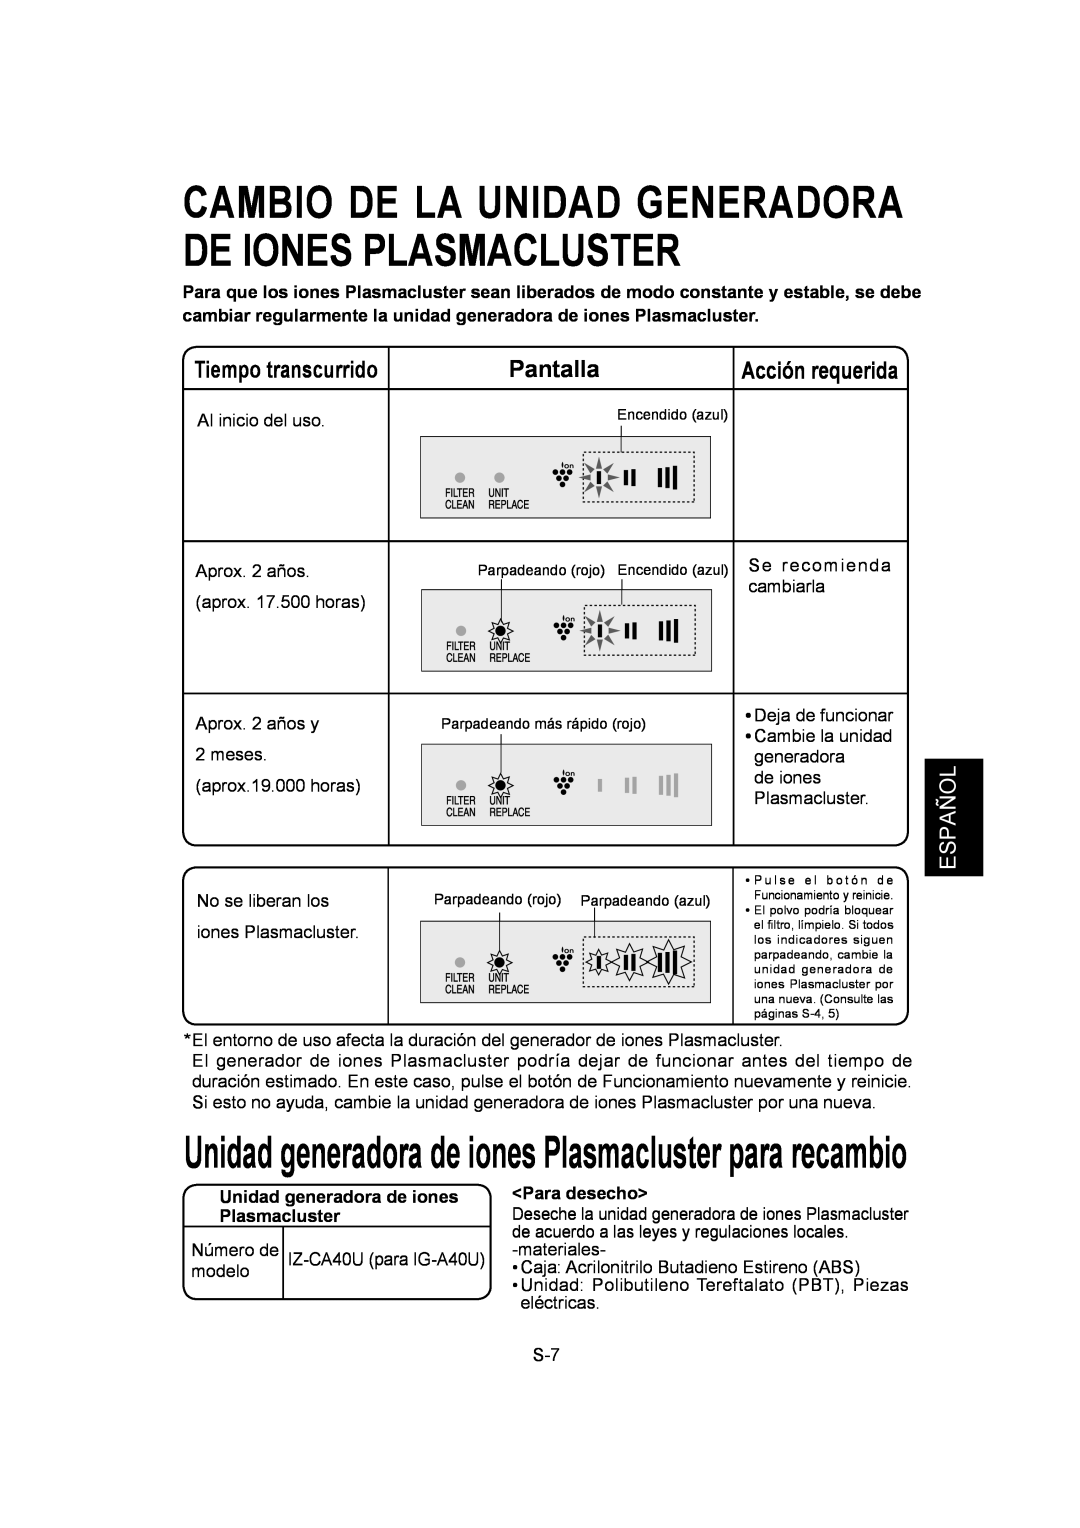 Sharp IG-A40U Tiempo transcurrido, Pantalla, Español, Al inicio del uso, Unidad generadora de iones Plasmacluster 